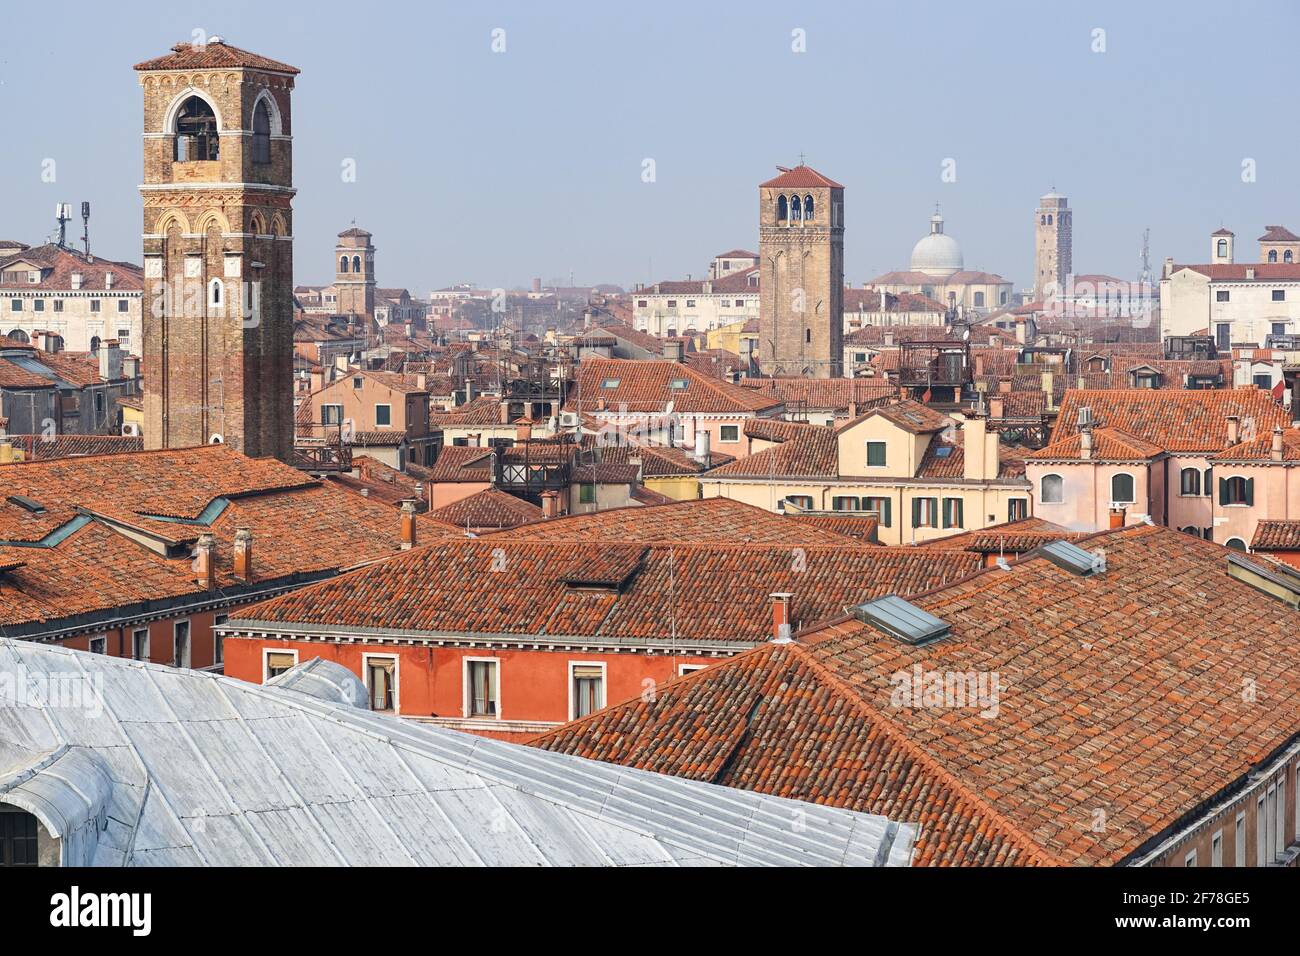 Vue sur les toits carrelés rouges de Venise, Italie Banque D'Images